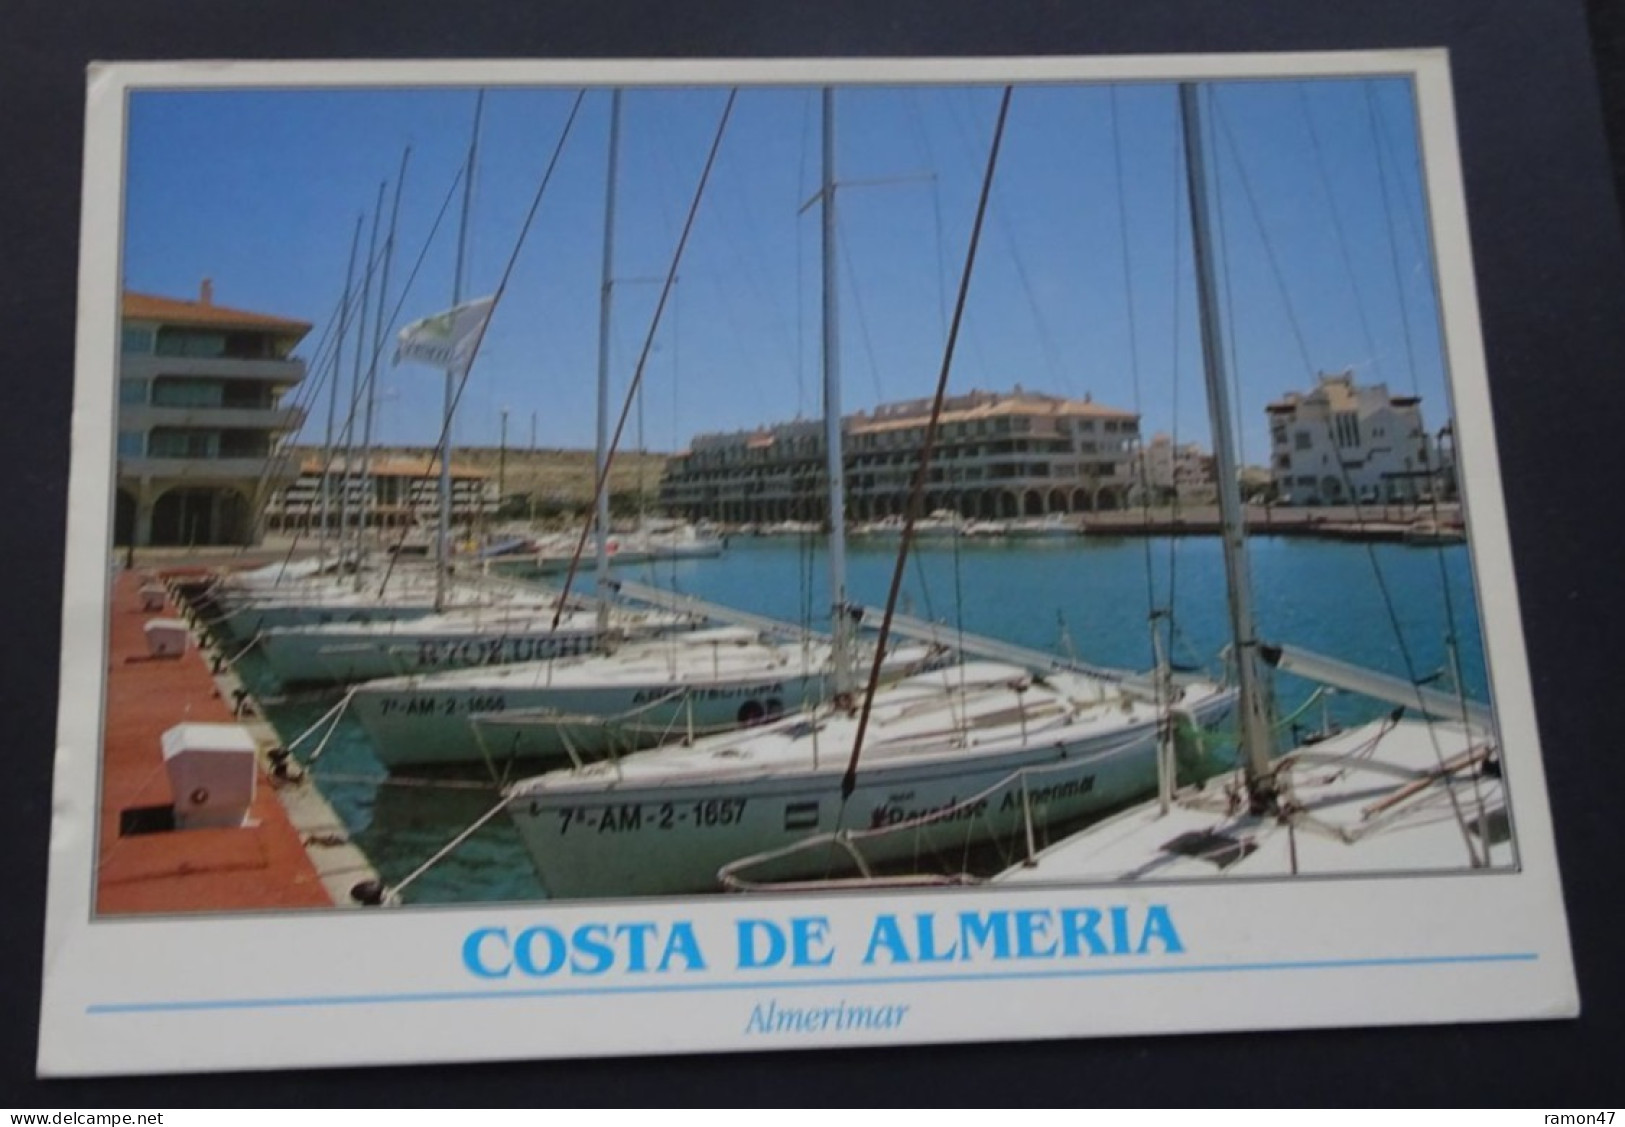 Costa De Almeria - Almerimar (El Egido) - Tintore Ediciones, Malaga - Fotografia Emilio Tintore - # 14.005 - Almería